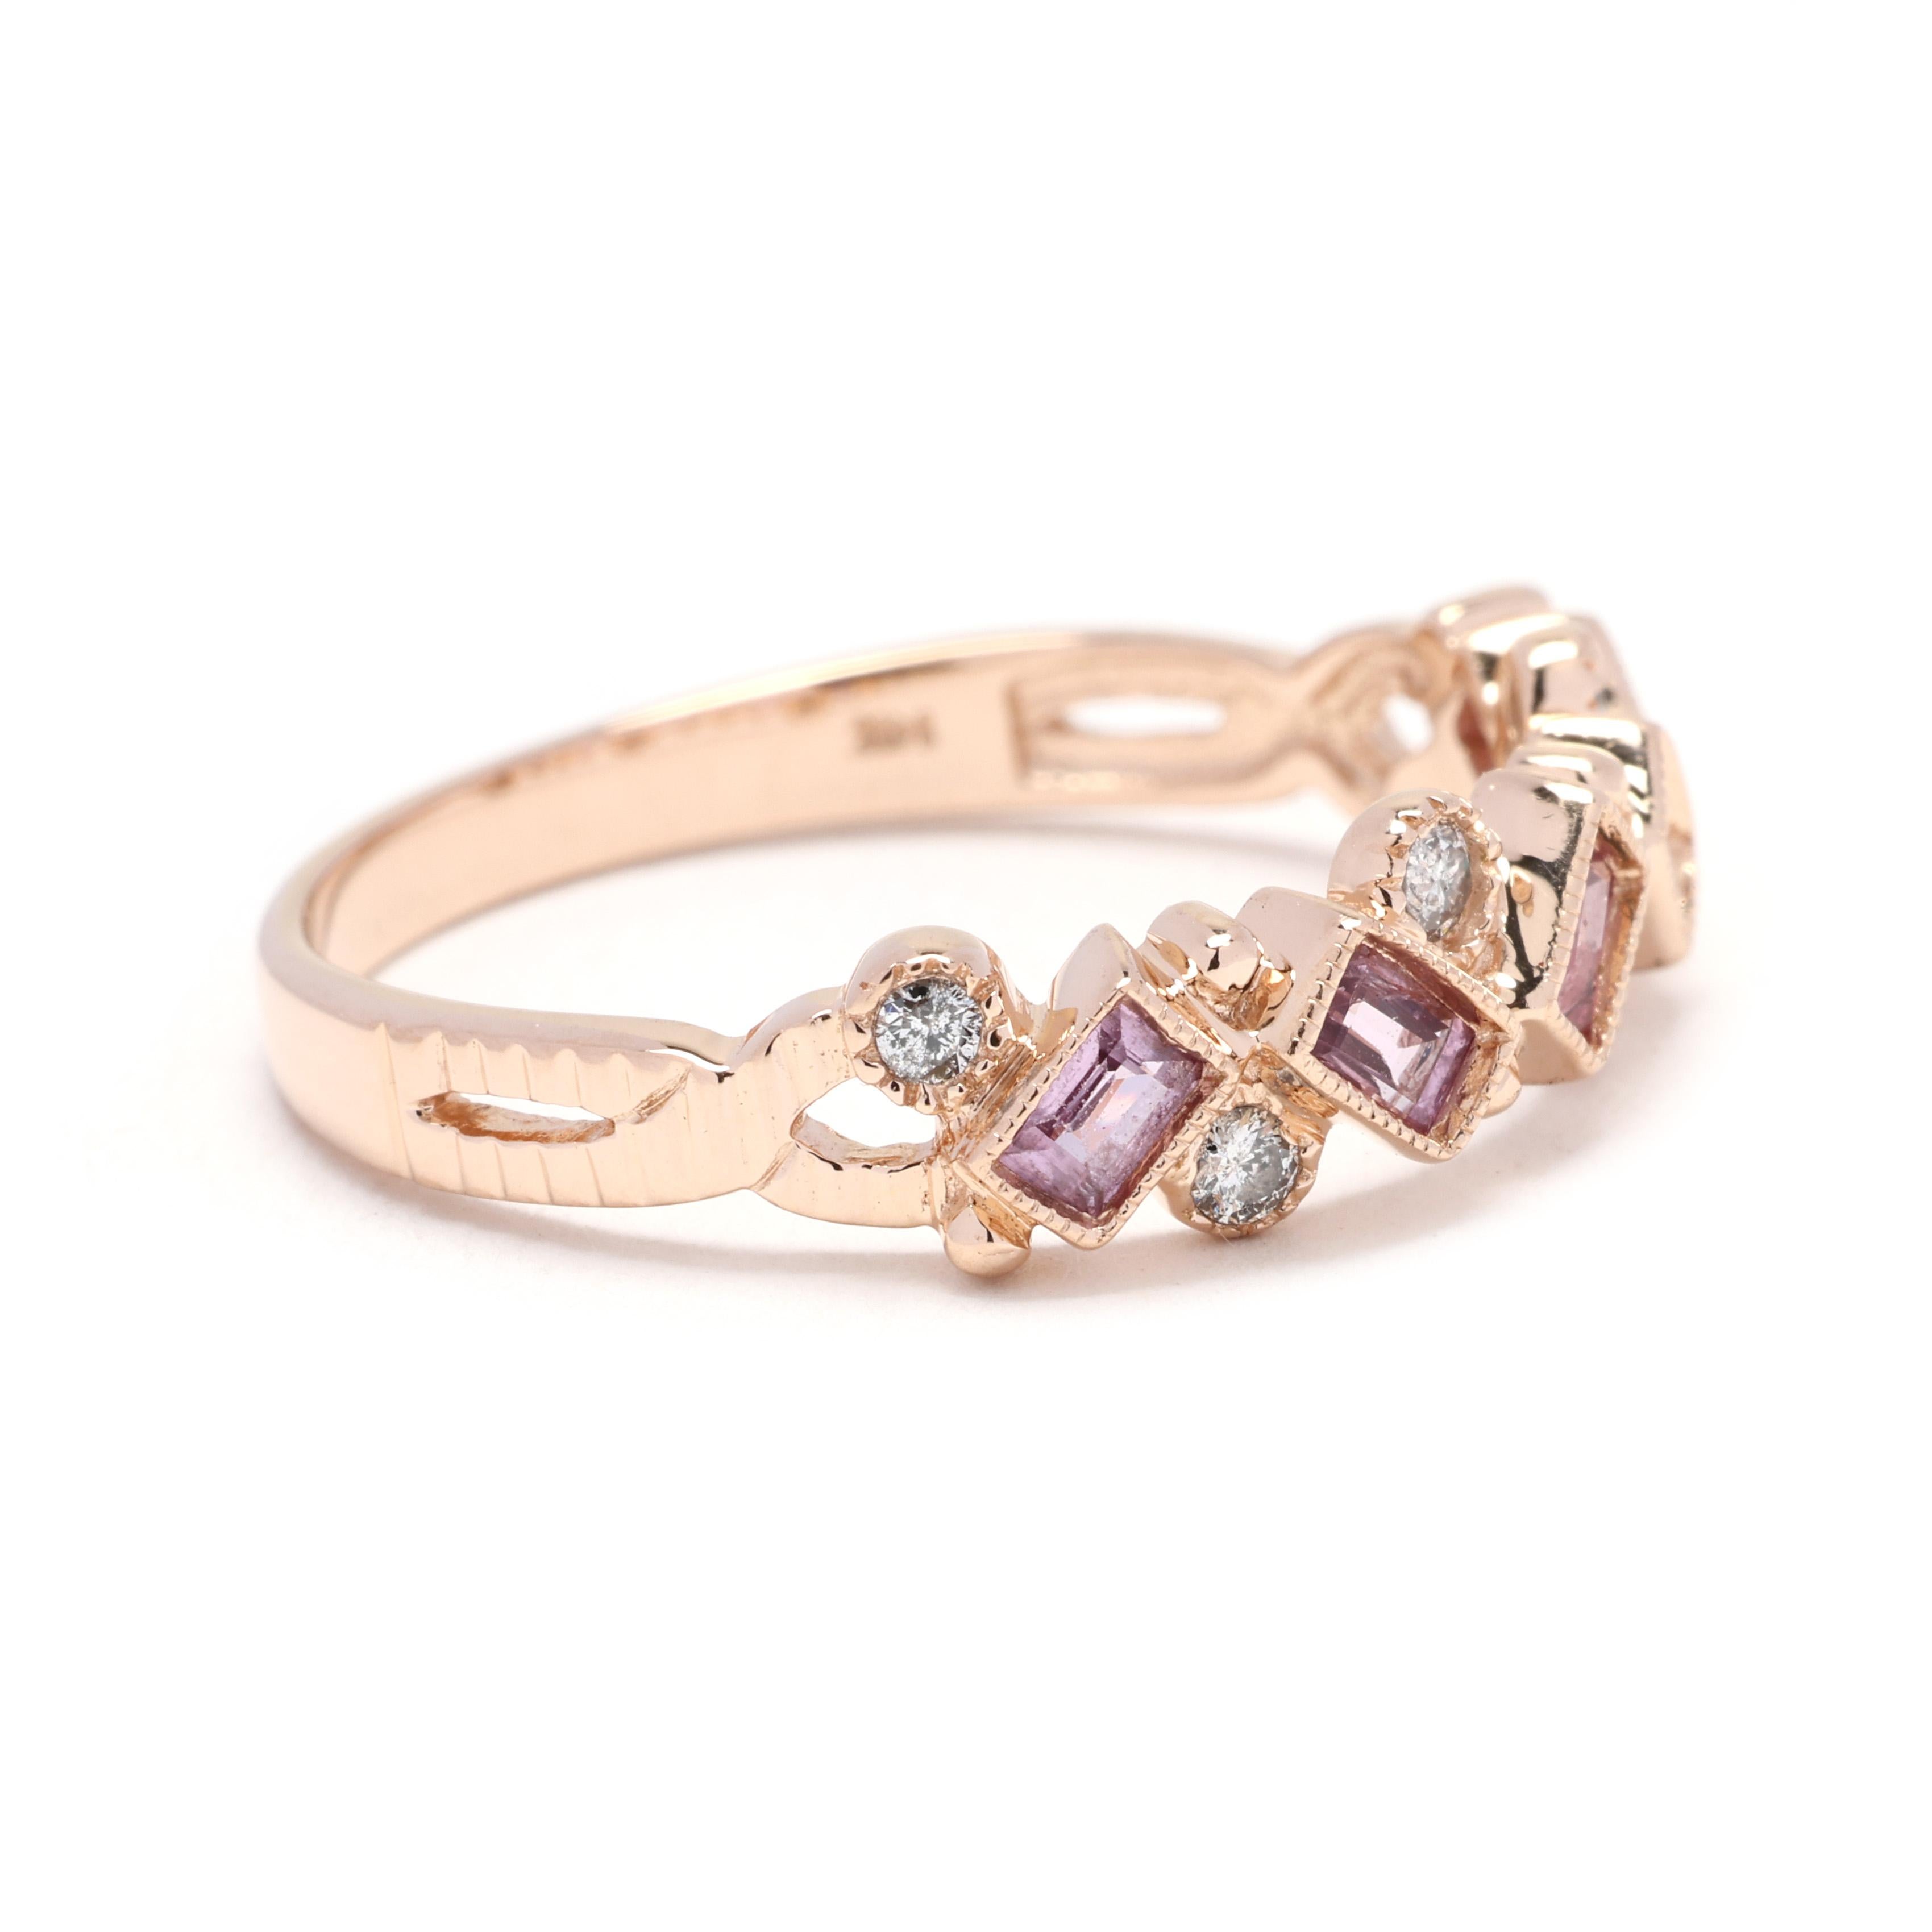 Dieser Ring mit 0,52 ct. rosa Saphir und Diamant ist ein schönes und elegantes Schmuckstück. Dieses stapelbare Band aus 14-karätigem Gelbgold zeigt einen atemberaubenden ovalen rosa Saphir in der Mitte, umgeben von einem Halo aus funkelnden